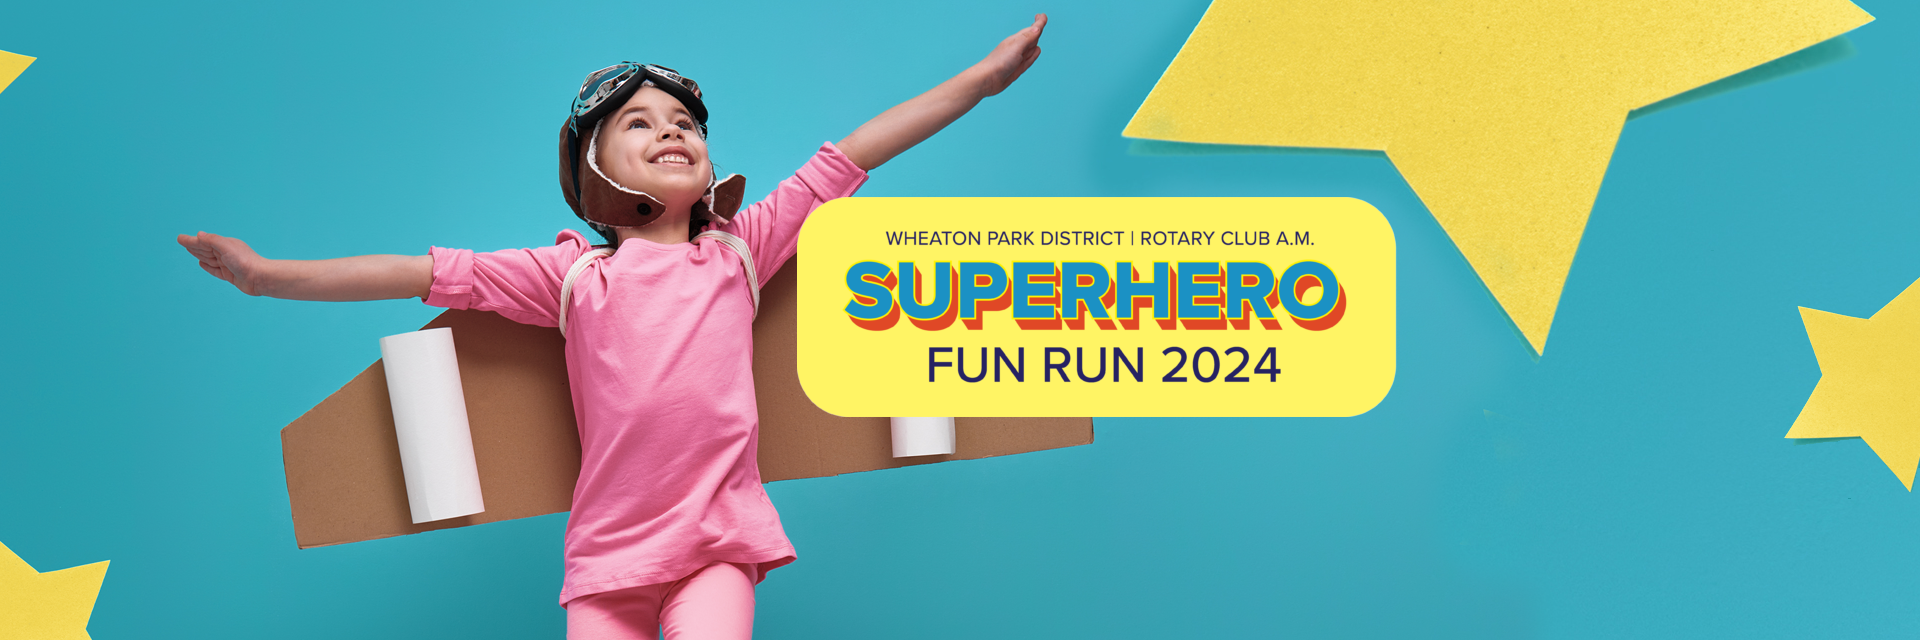 Superhero-Fun-Run-2024